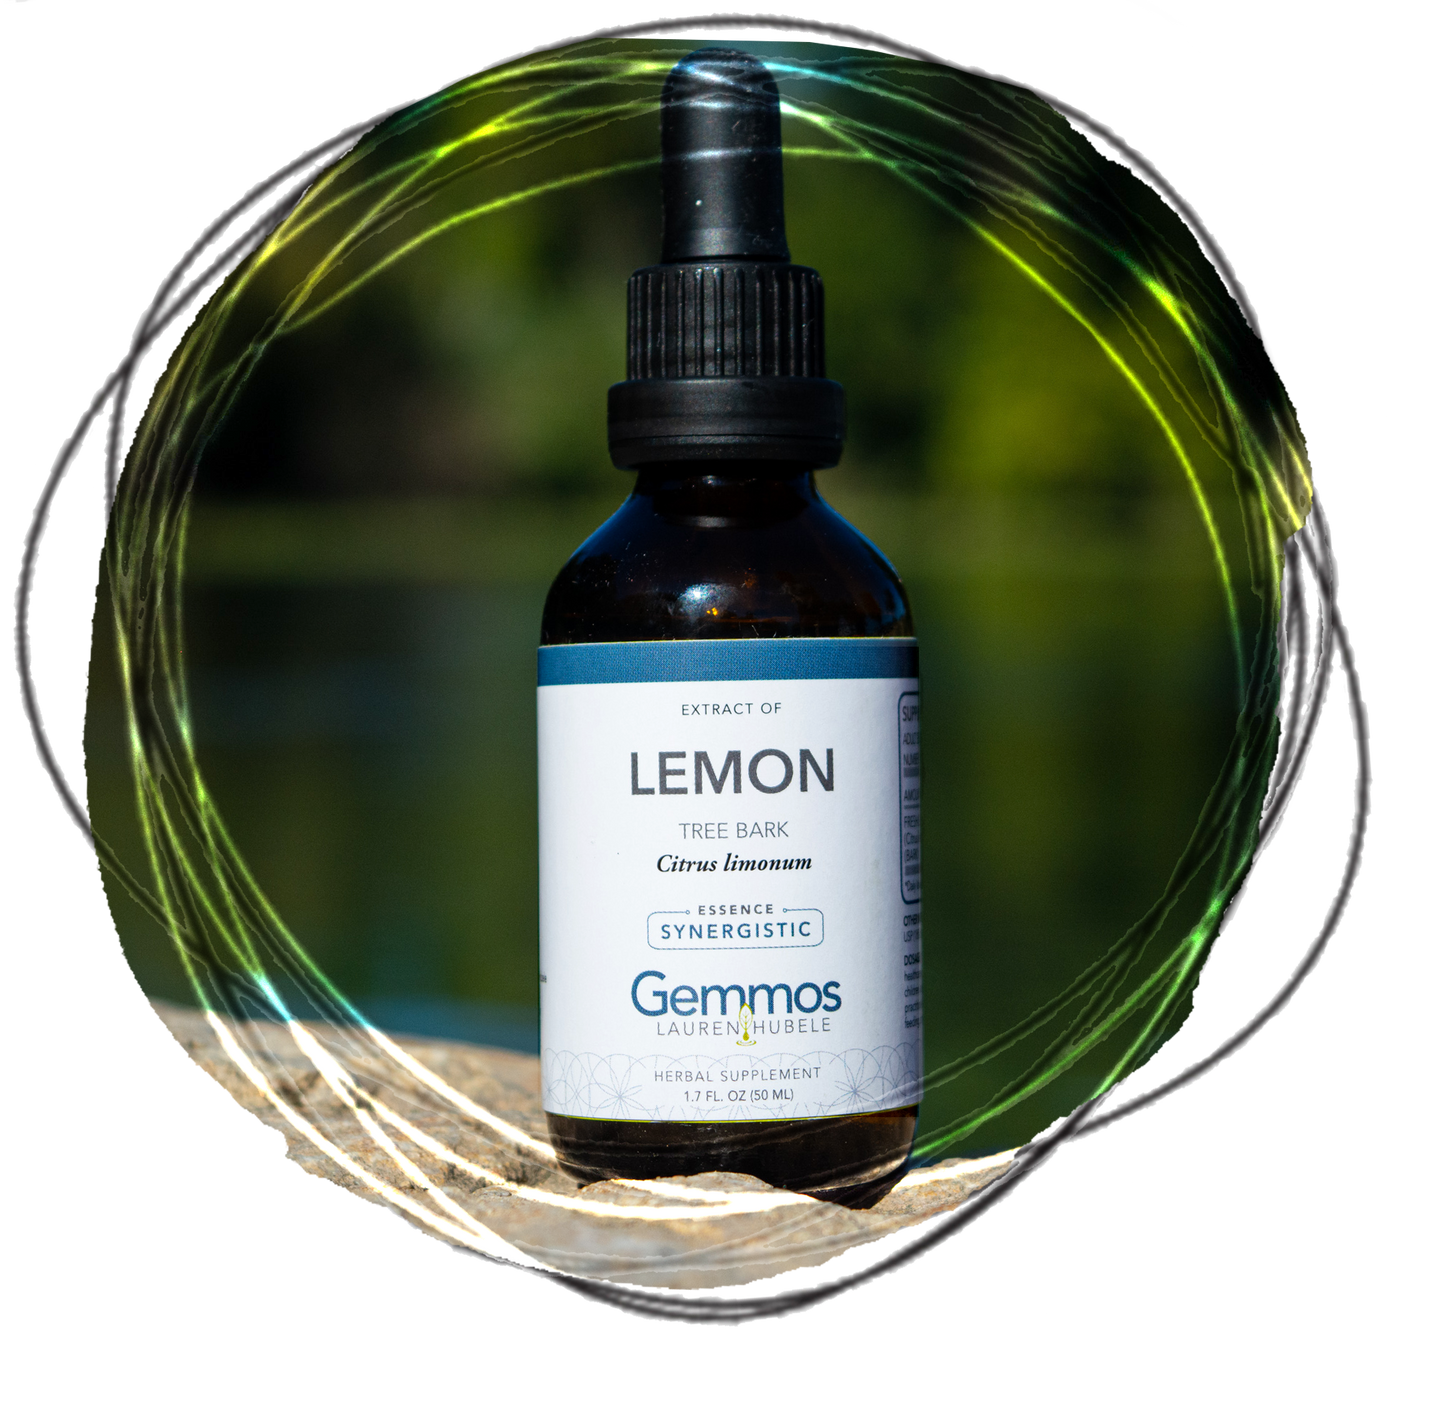 Lemon, Citrus limonum cortex